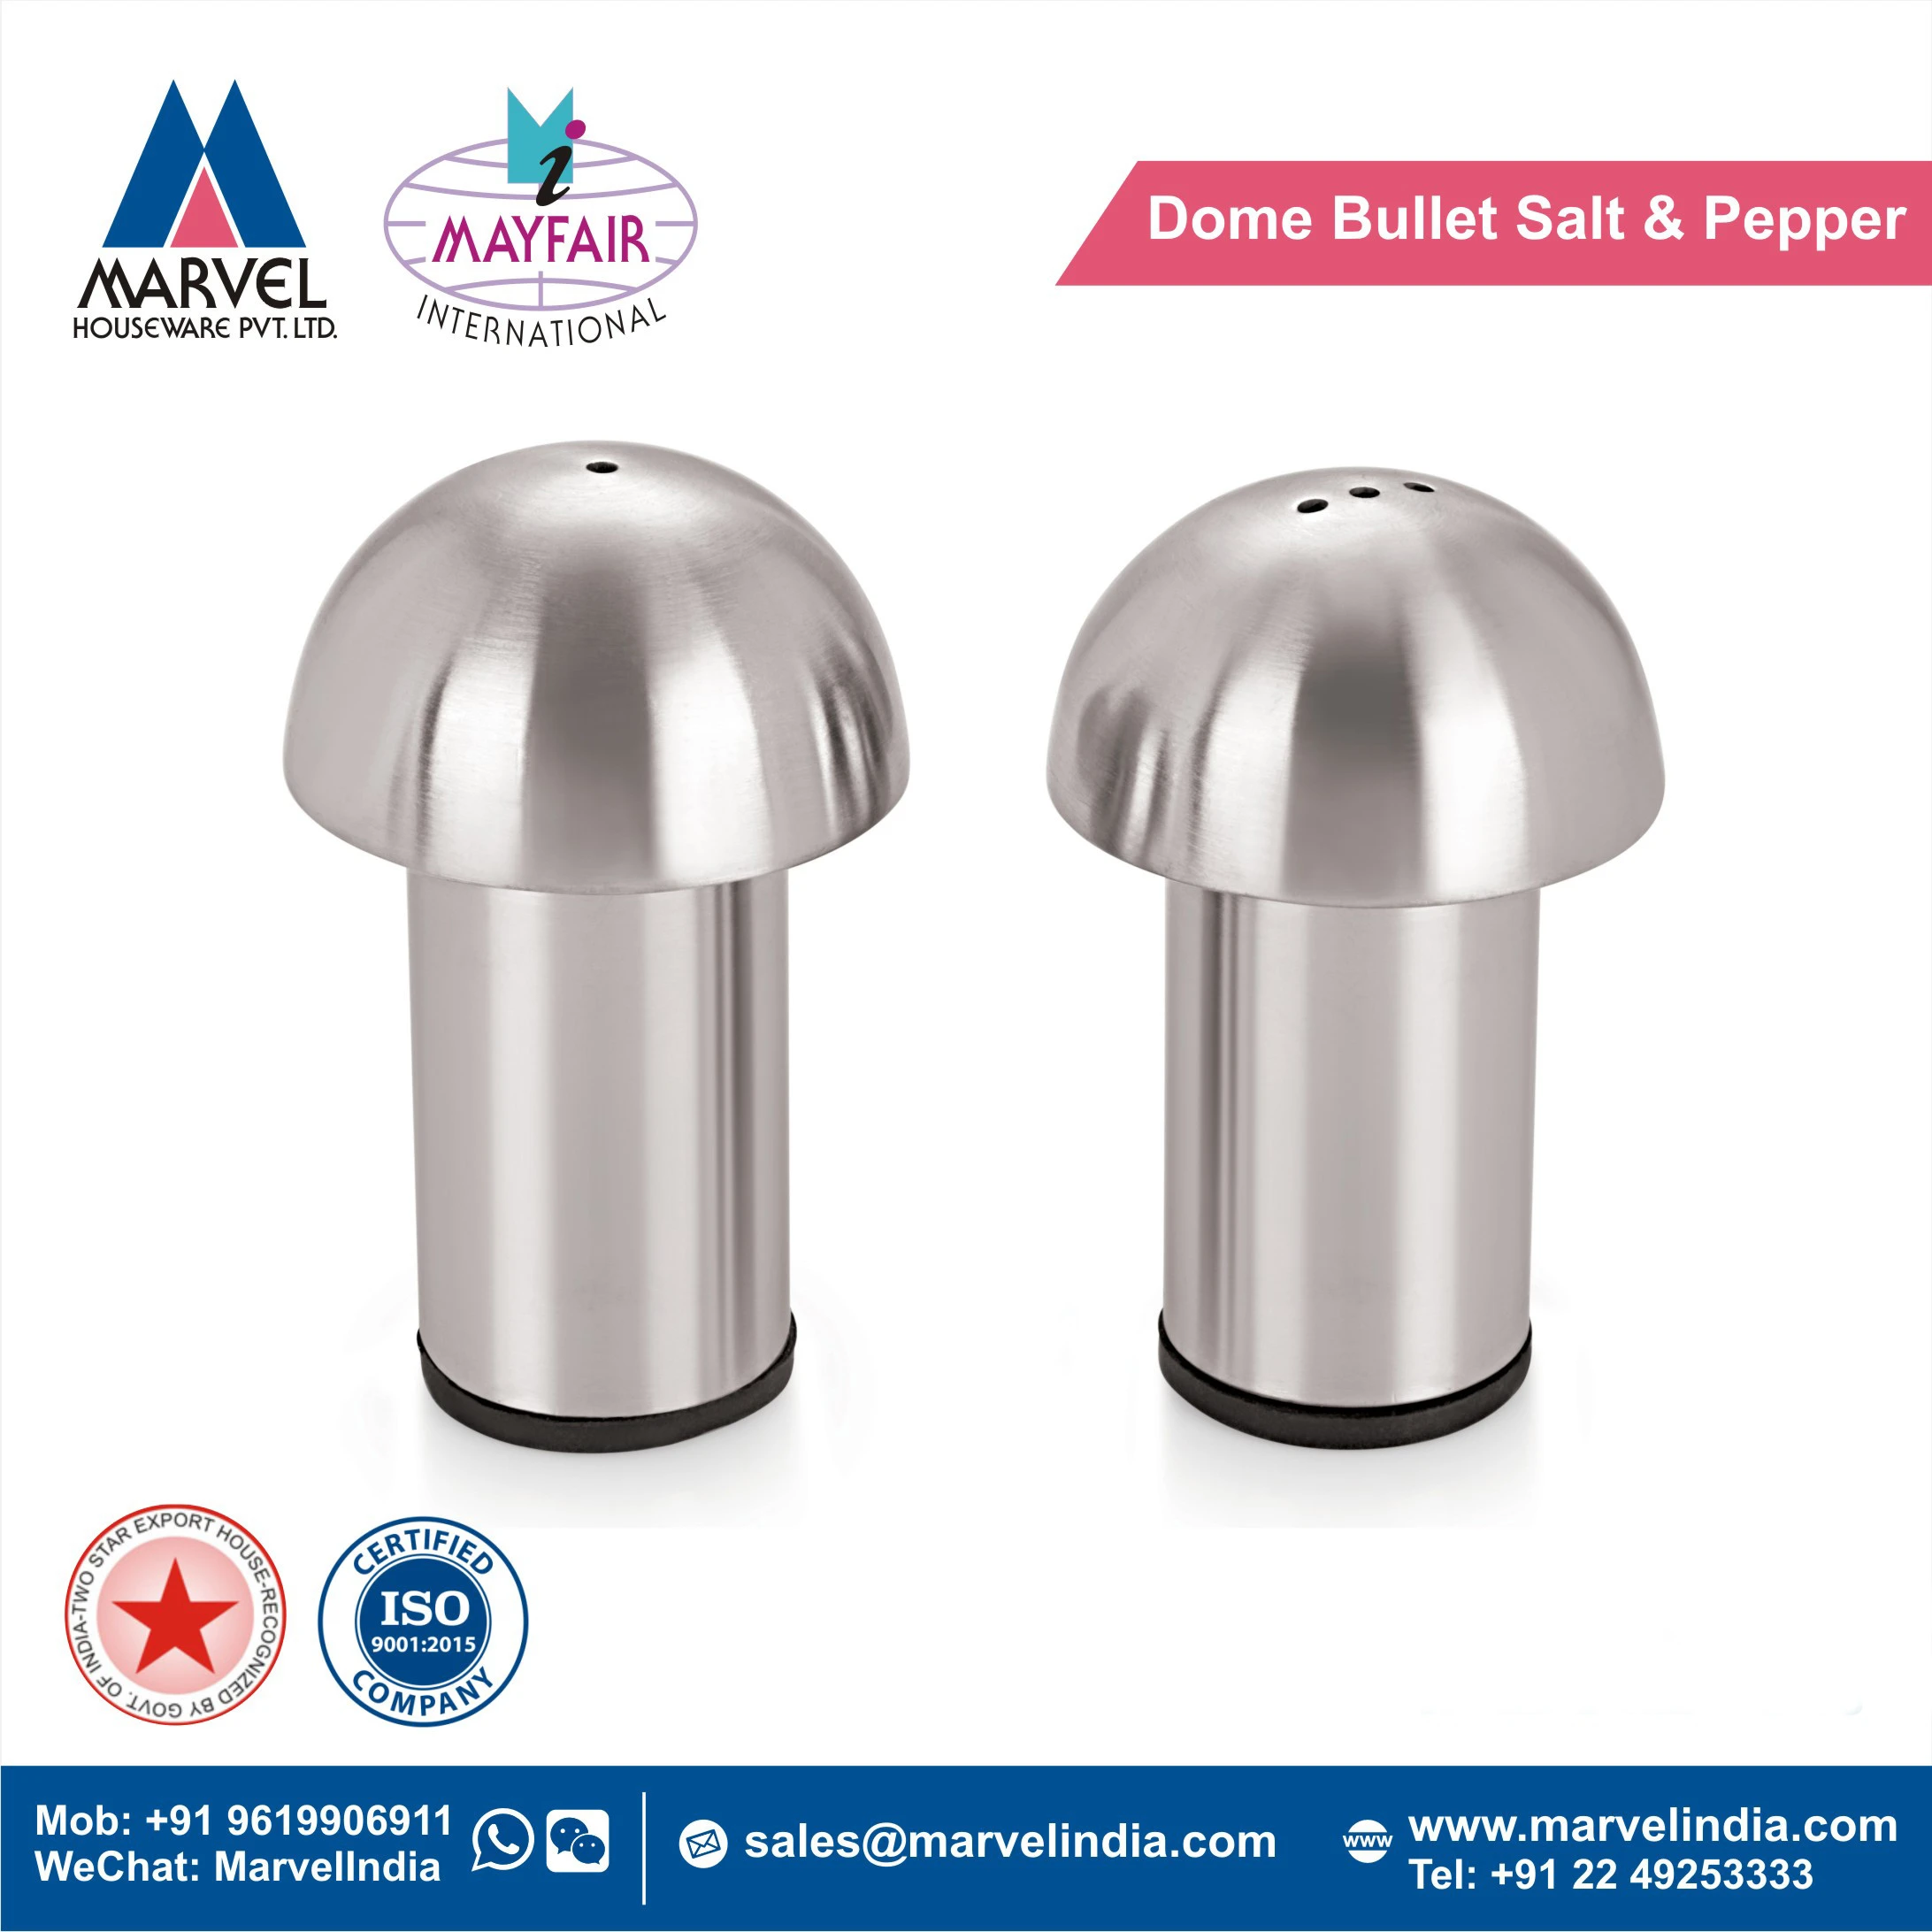 Dome Bullet Salt & Pepper